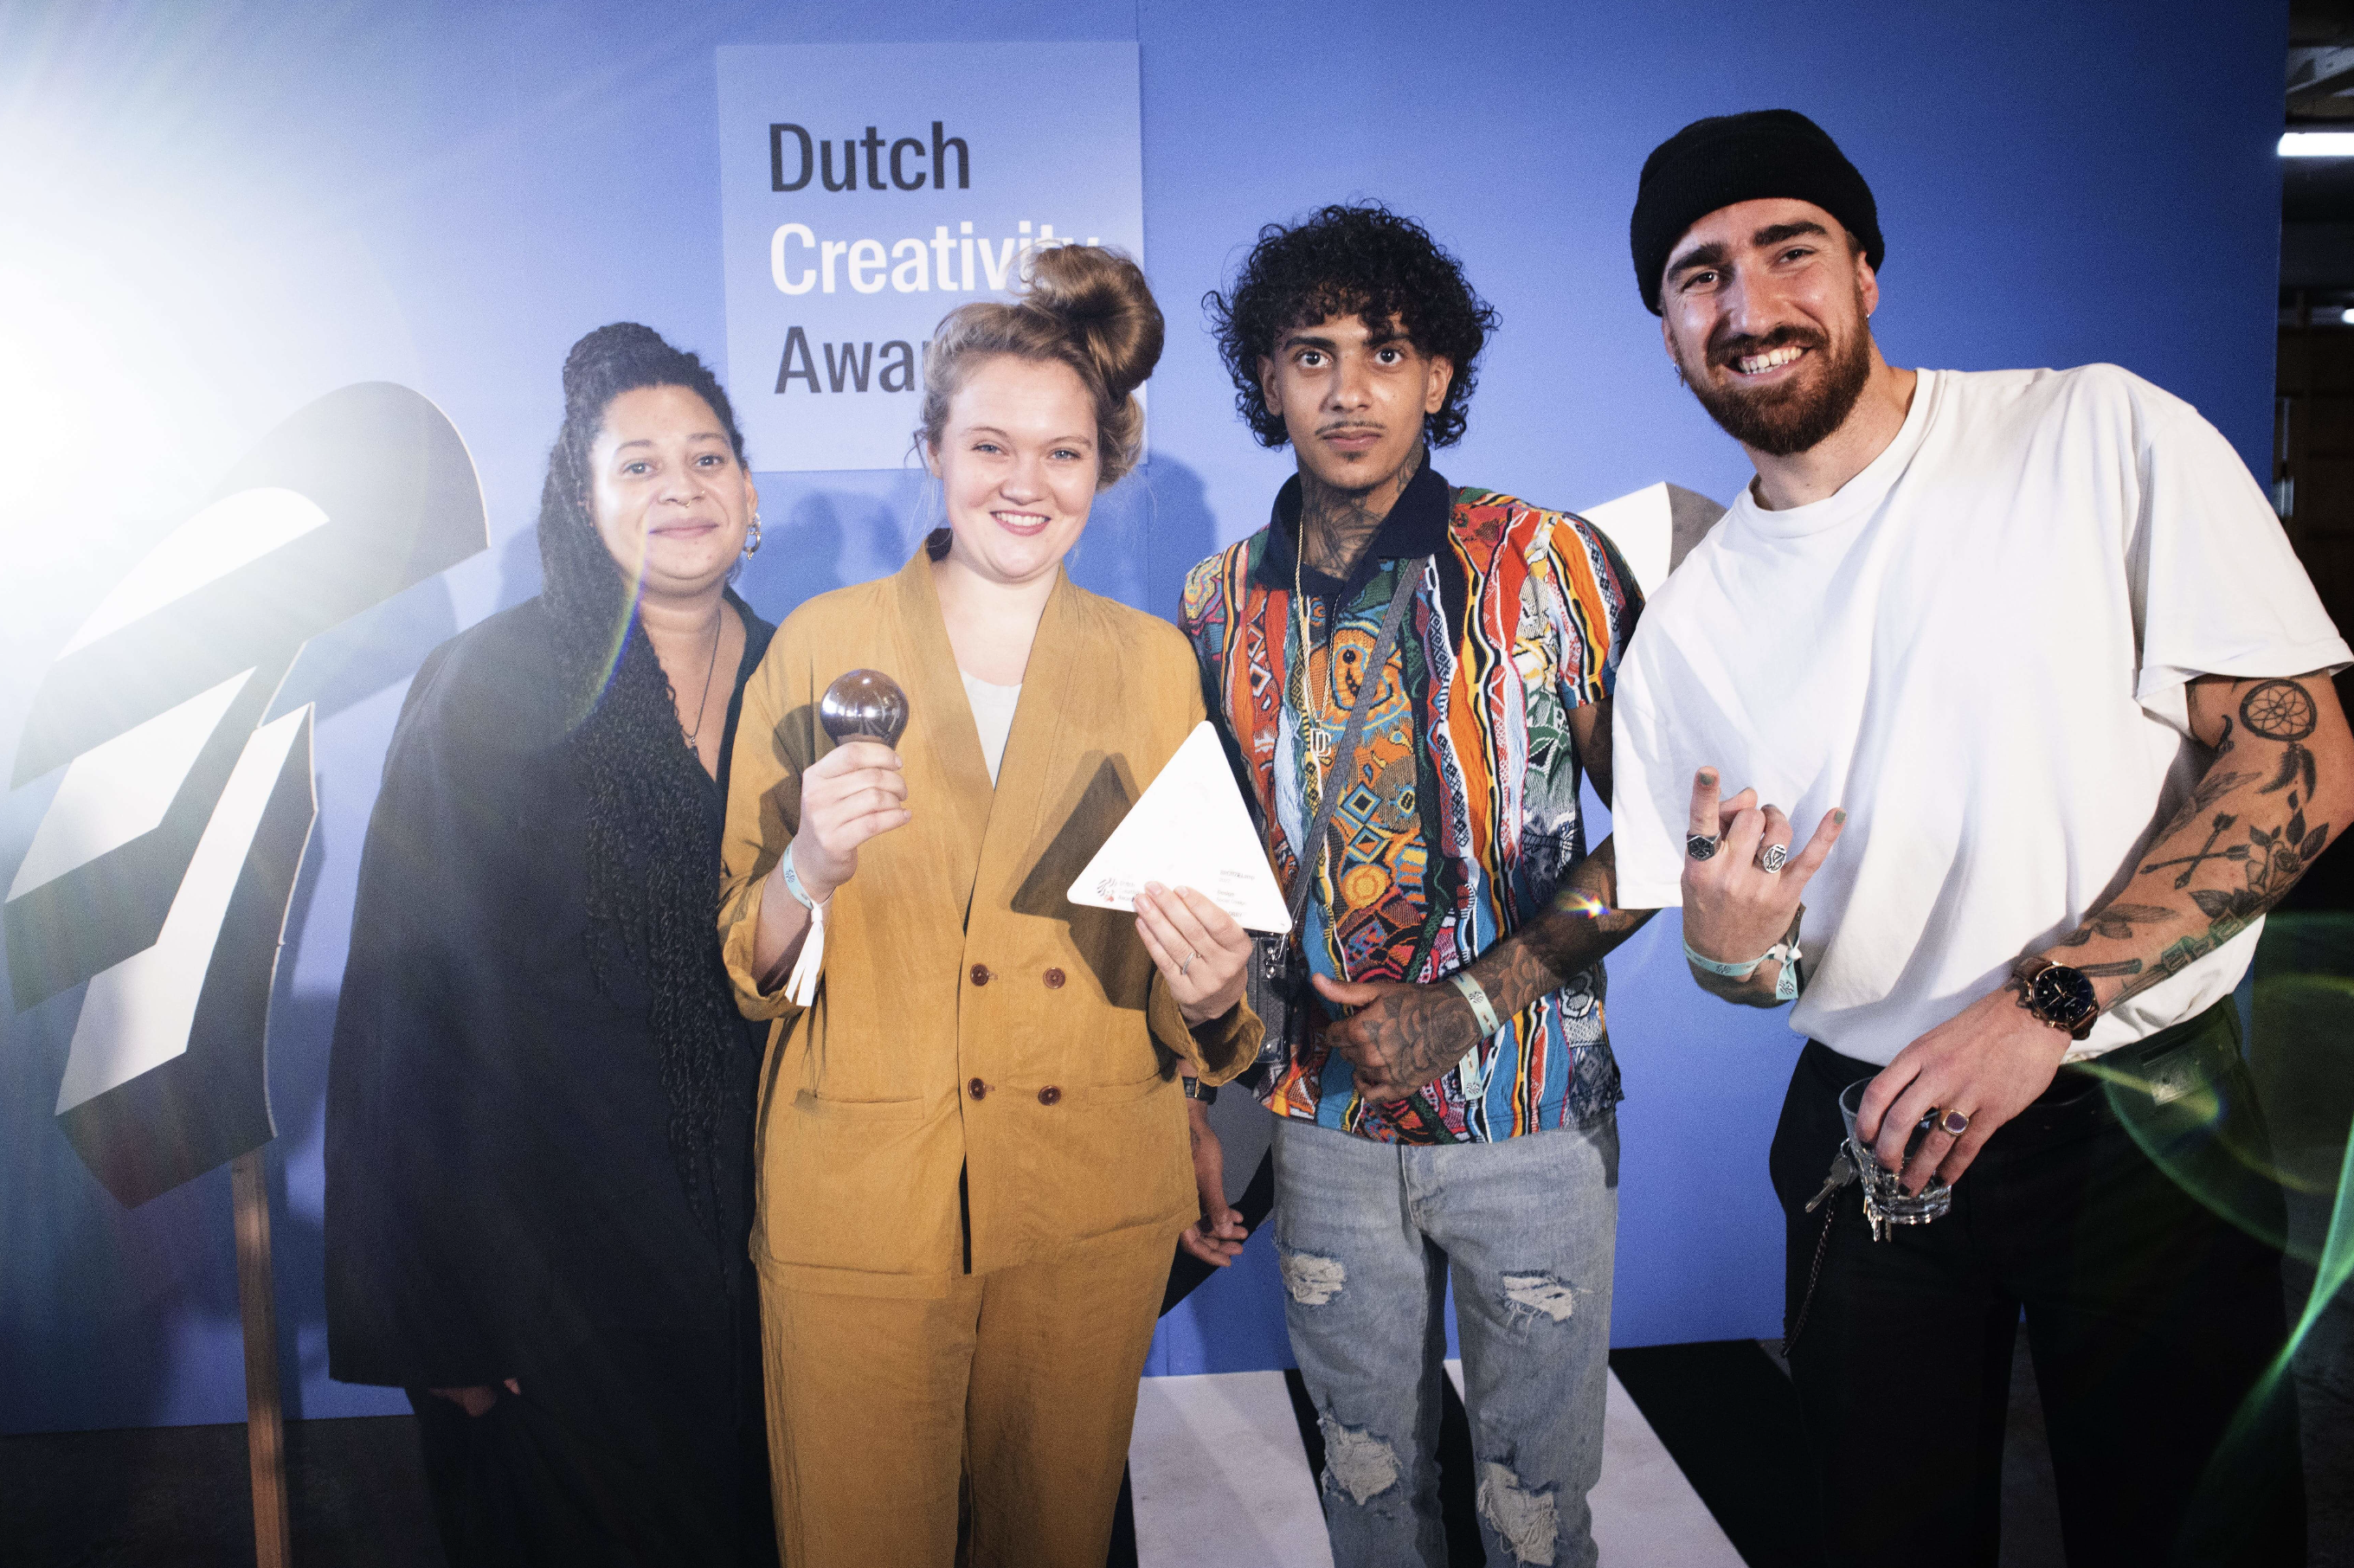 Op de foto Michel (expert) Camiel (jongerencoach en kapper) en Afdeling Buitengewone Zaken’s Hannah en Zoë, trots met de Dutch Creativity Award in hun handen.